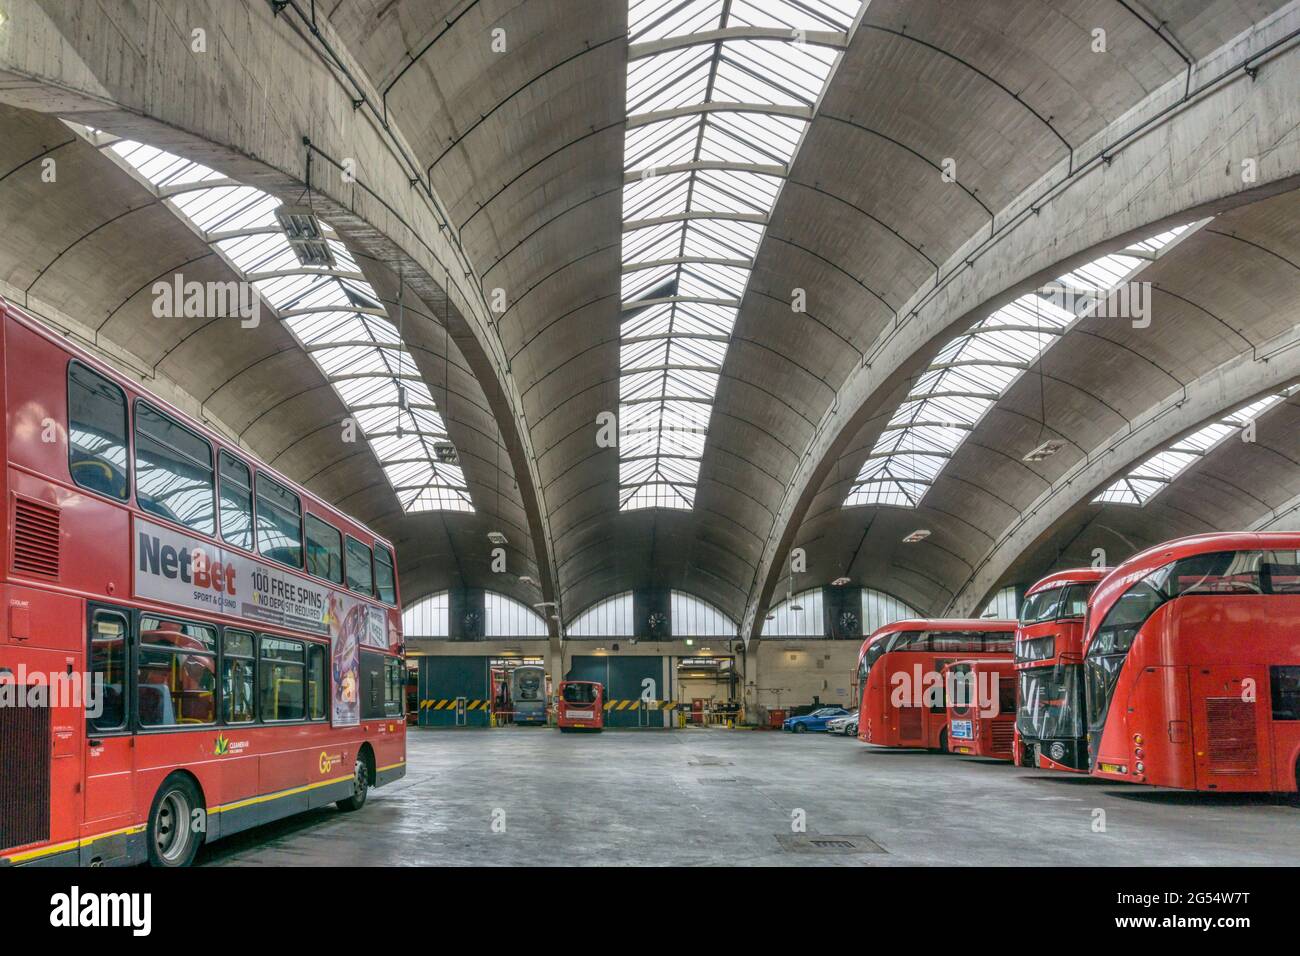 El grado II * enumeradas, hormigón armado, Stockwell garaje de autobuses más grande de Europa tenían techo incompatible span cuando abrió en 1952. Foto de stock